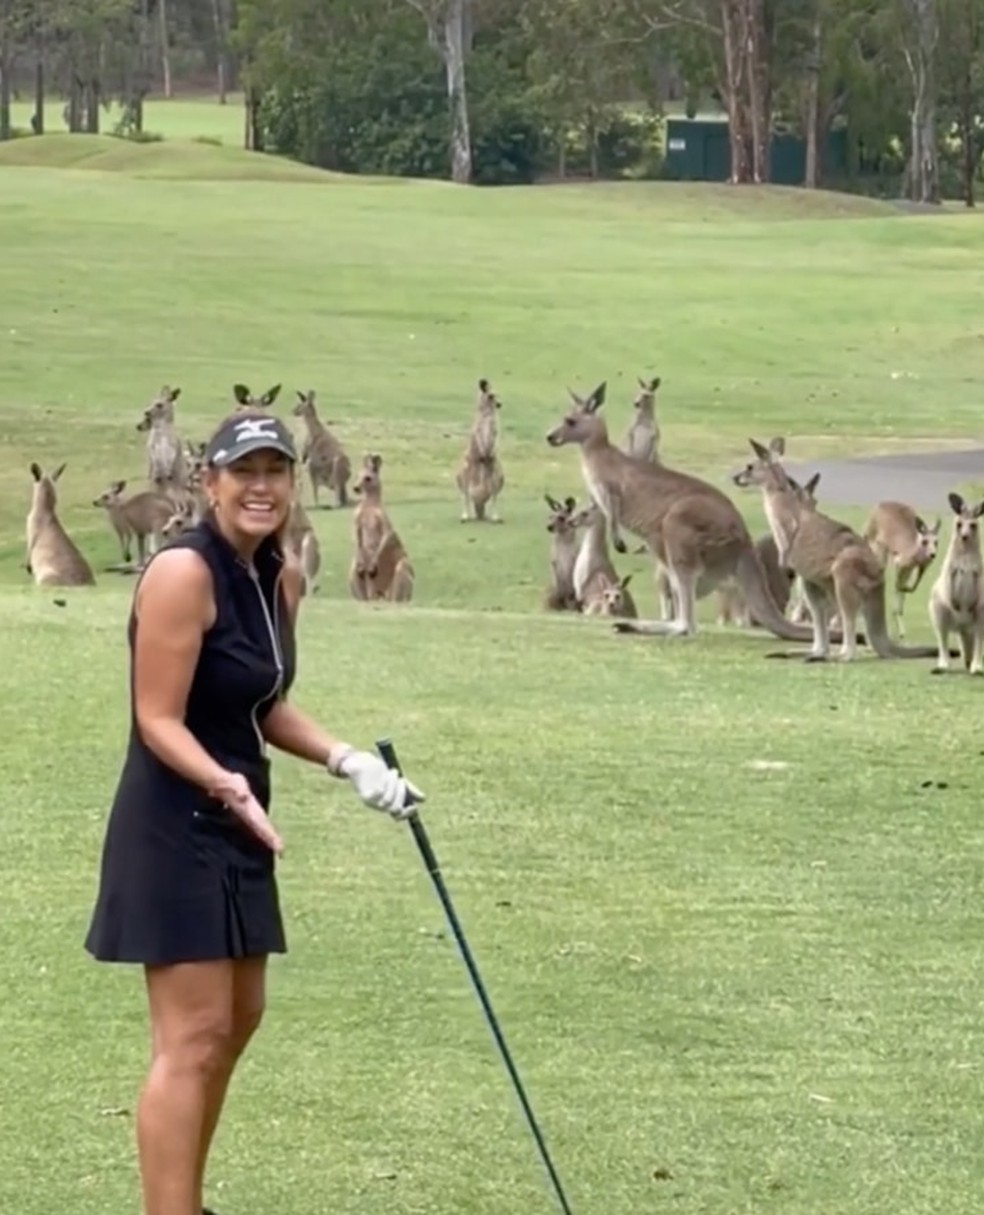 Cangurus interrompem jogo de golfe na Austrália — Foto: Reprodução